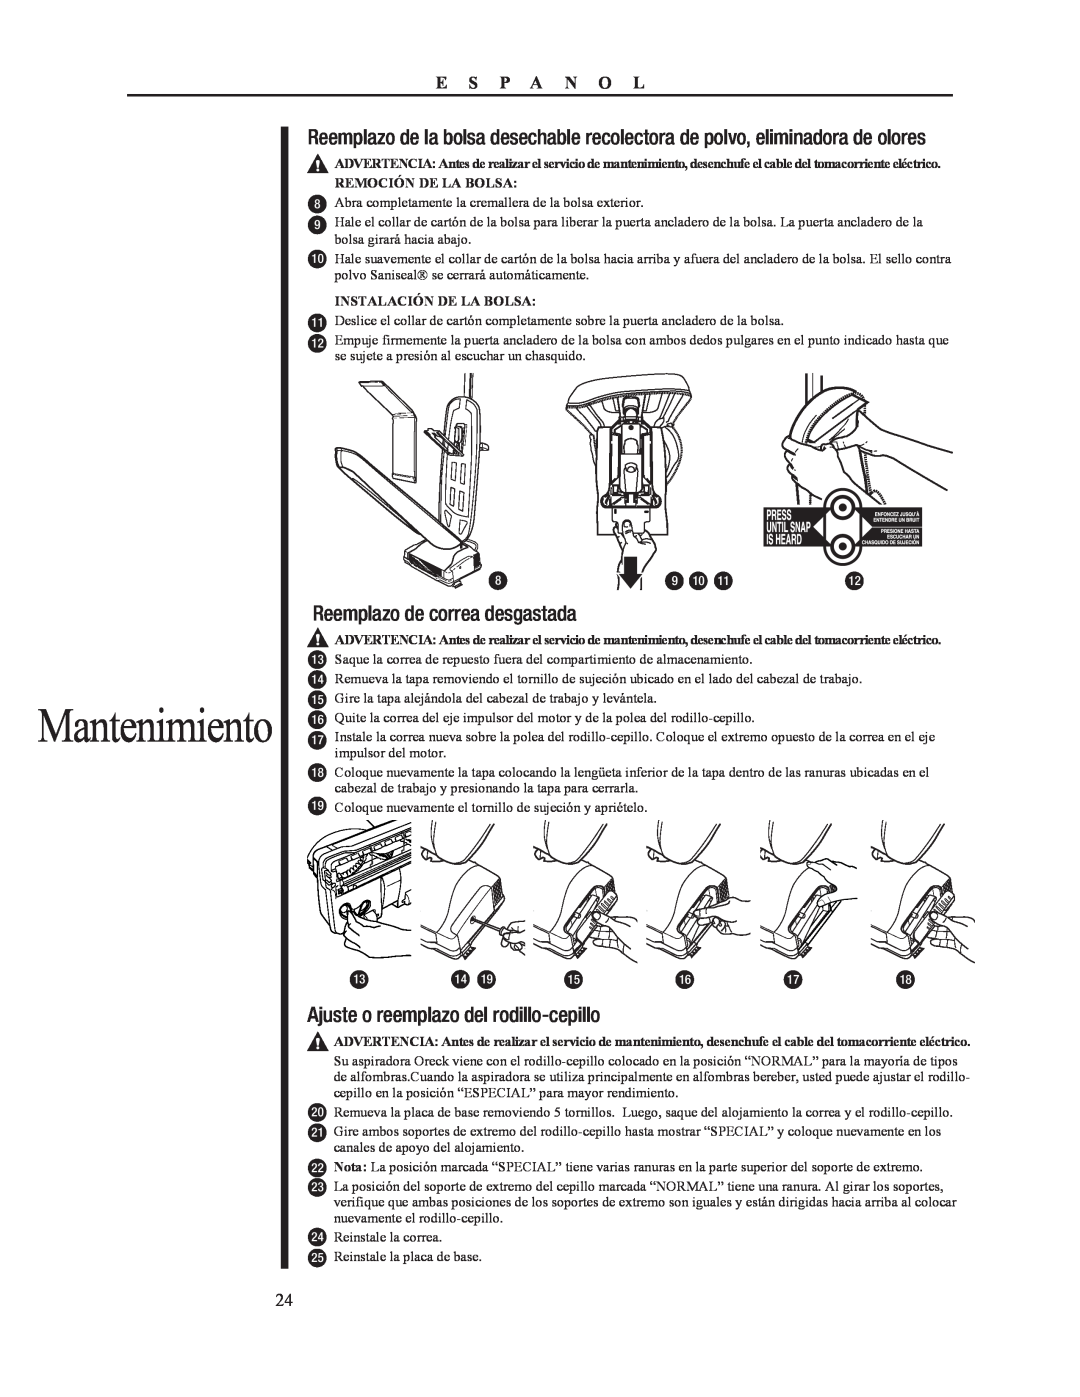 Oreck 79052-01REVA manual Mantenimiento, Ajuste o reemplazo del rodillo-cepillo 